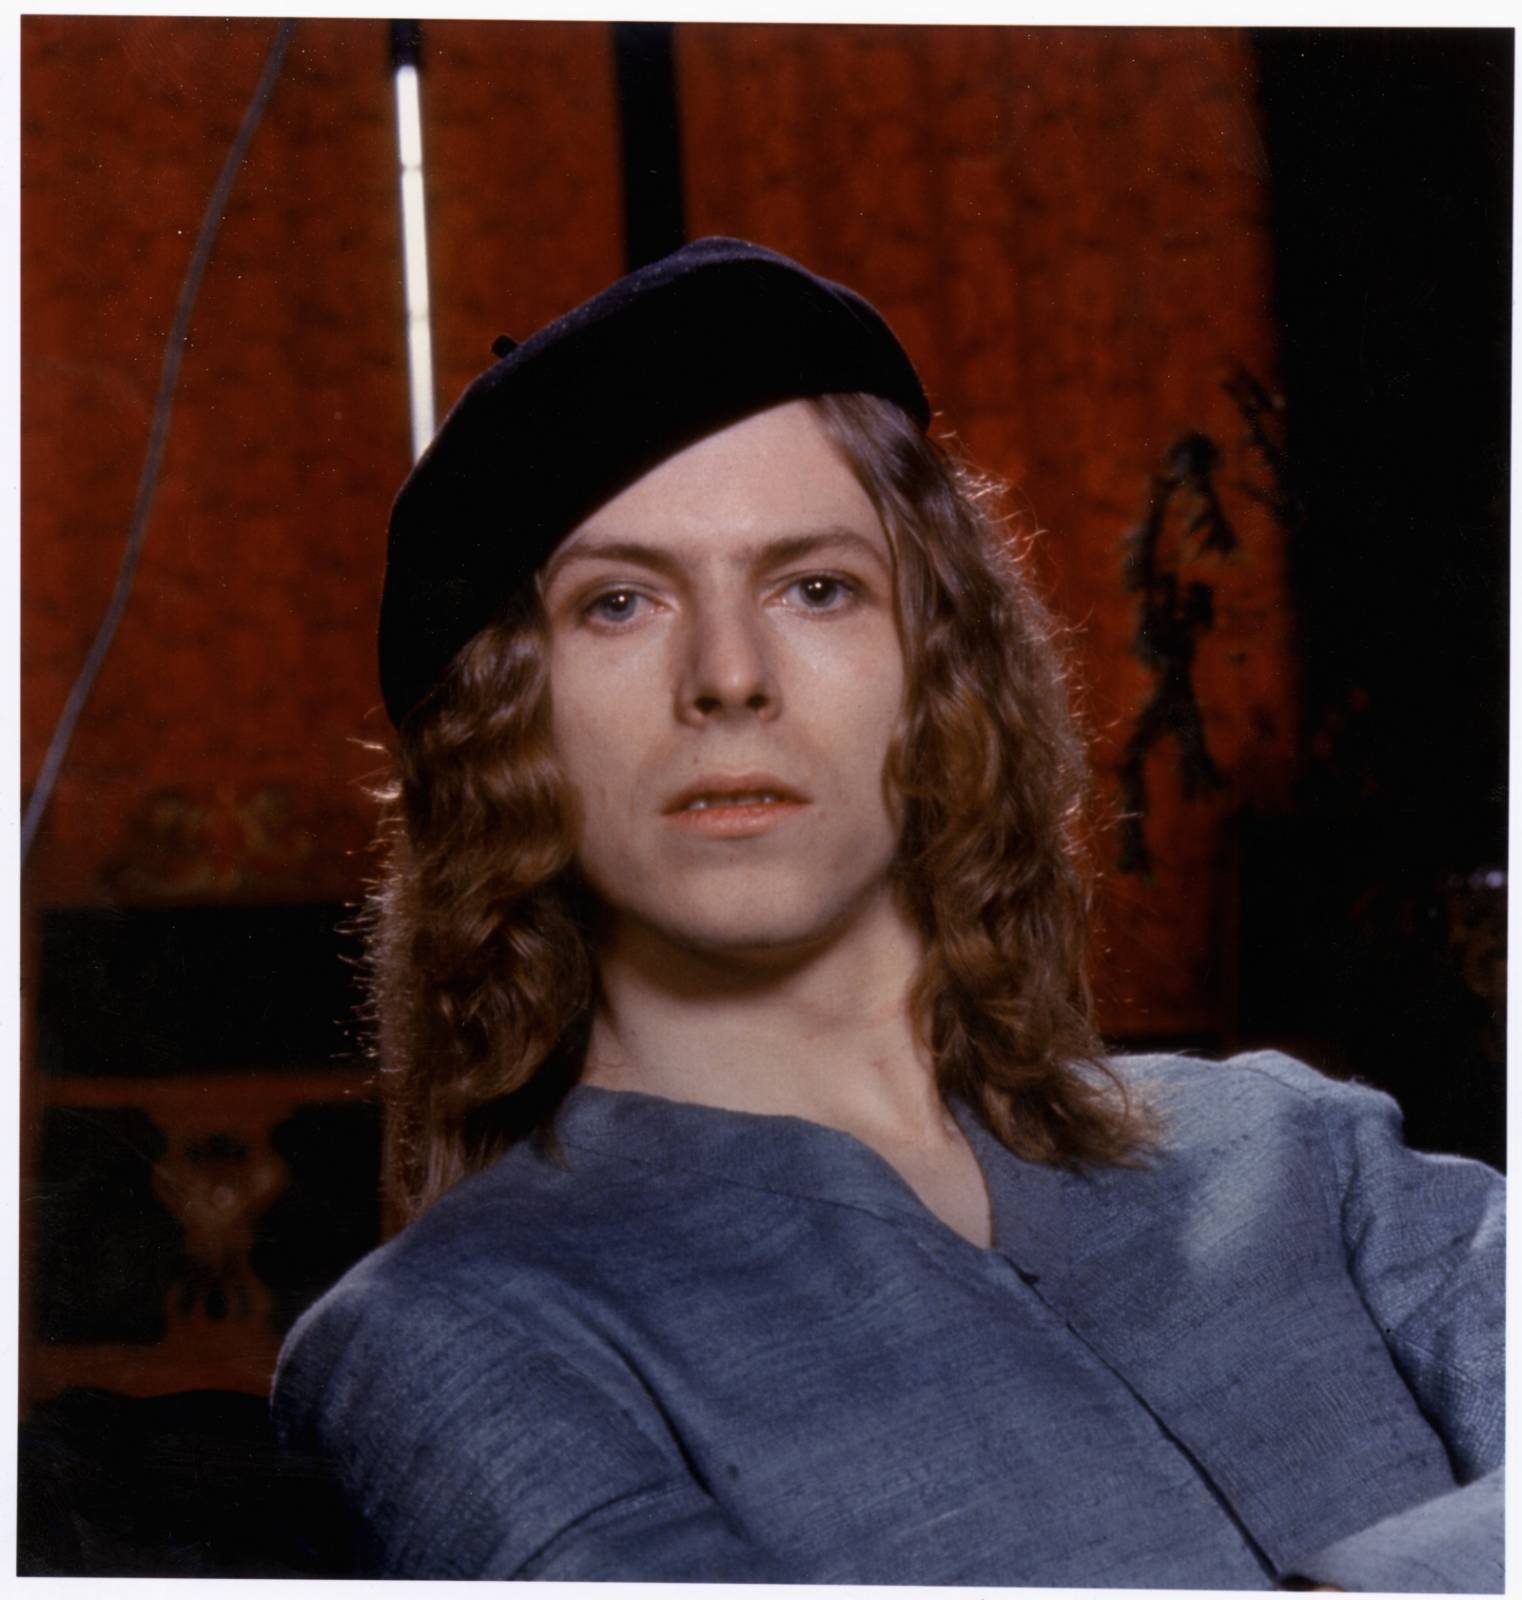 ROZHOVOR | David Bowie: Brian Eno měl pravdu, definitivně jsme zavraždili šedesátá léta